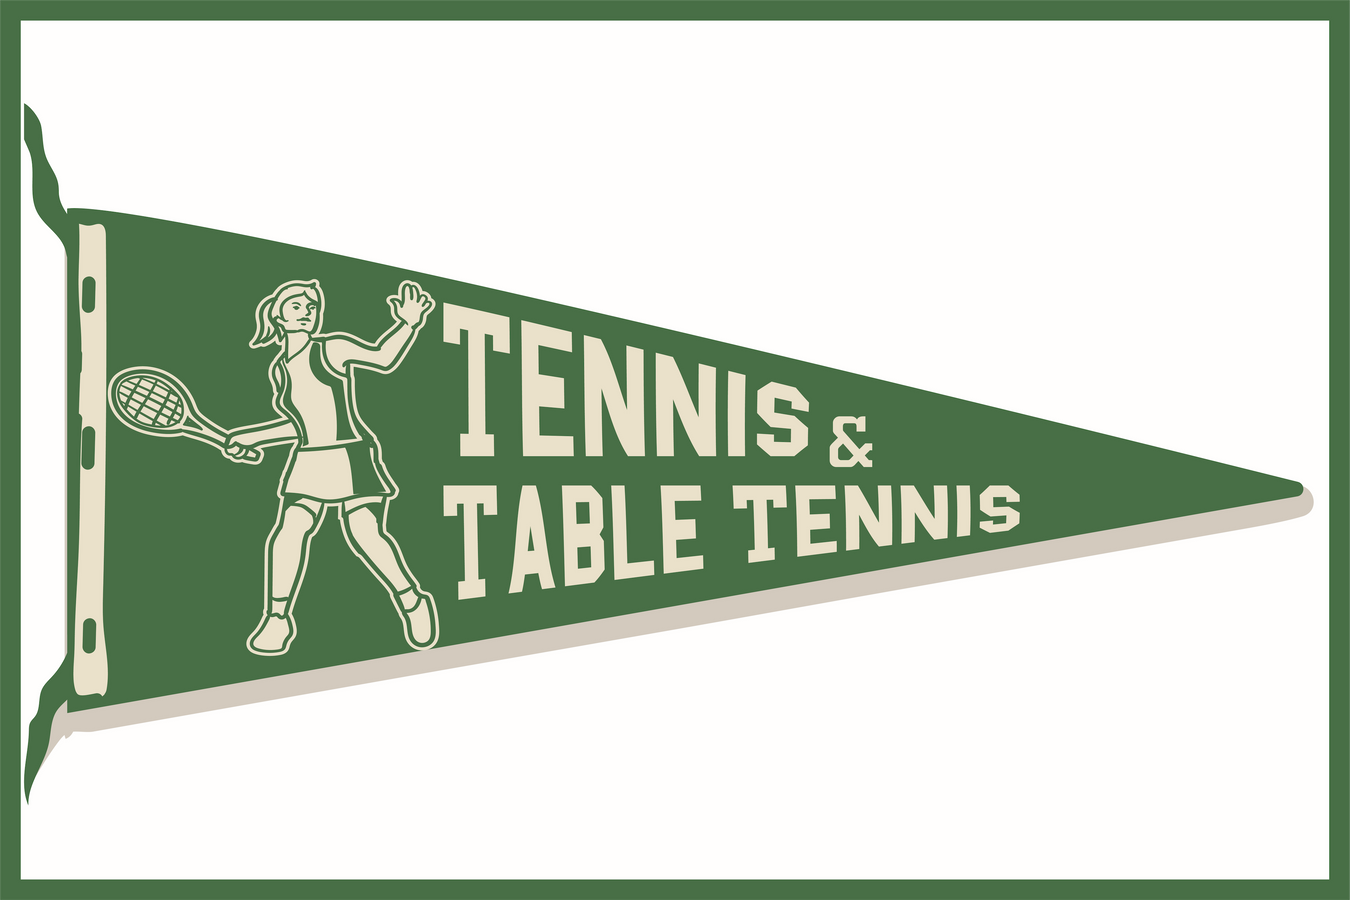 Tennis & Table Tennis